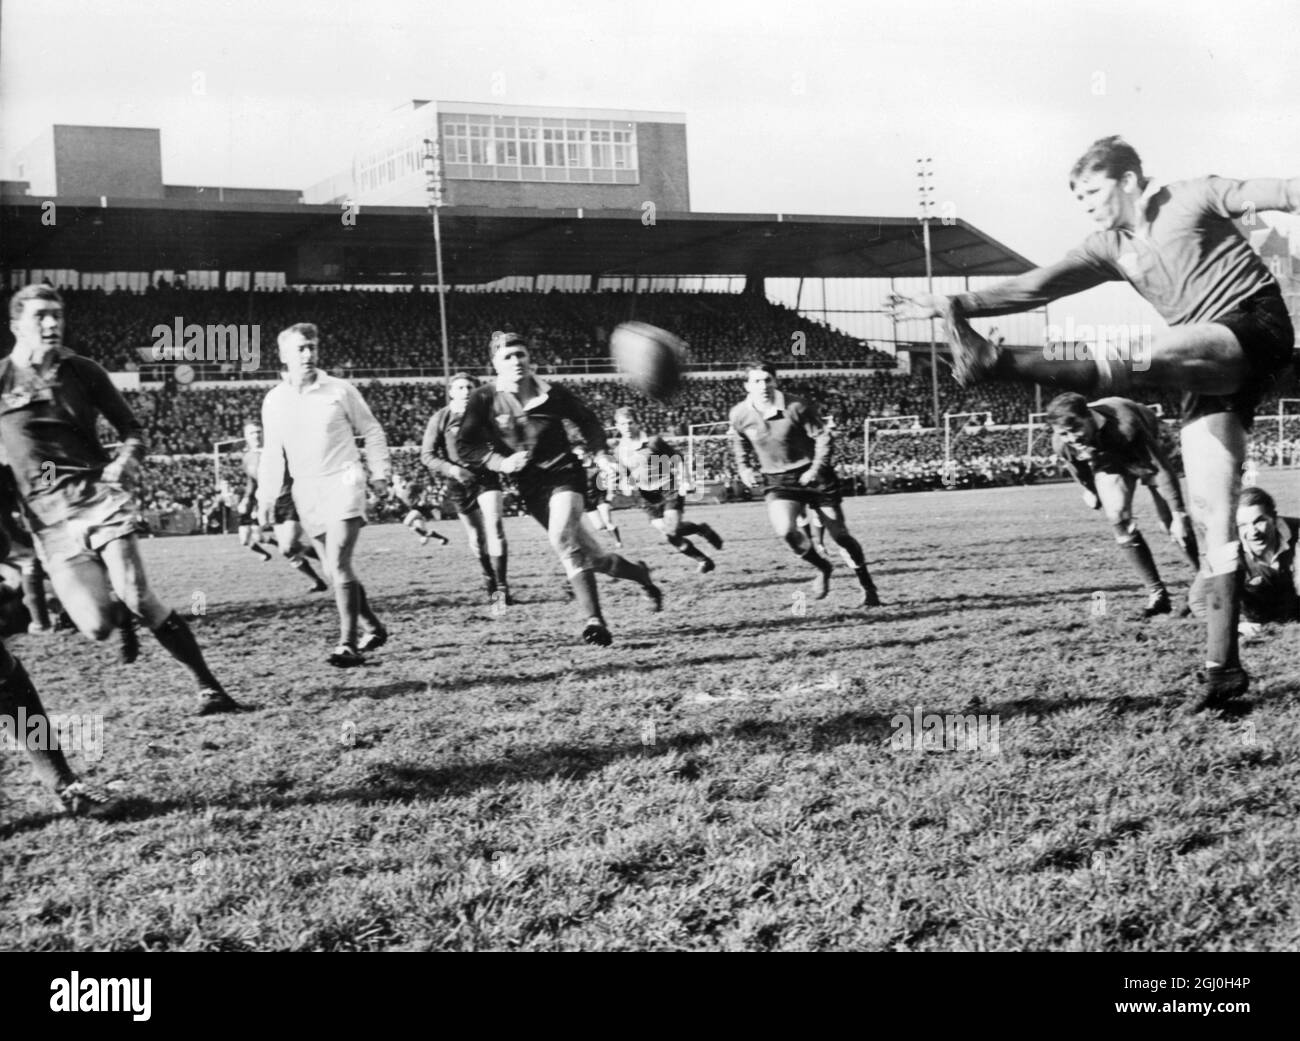 Der irische Stürmer McBride schießt in der ersten Hälfte des Rugby-Spiels Wales gegen Irland auf das Tor, als das irische Team Wales die dritte Niederlage der Saison in Folge zugefügt hatte, um Irlands Chancen auf den Gewinn der Internationalen Meisterschaft zu stärken 11. März 1967 Cardiff Wales Stockfoto